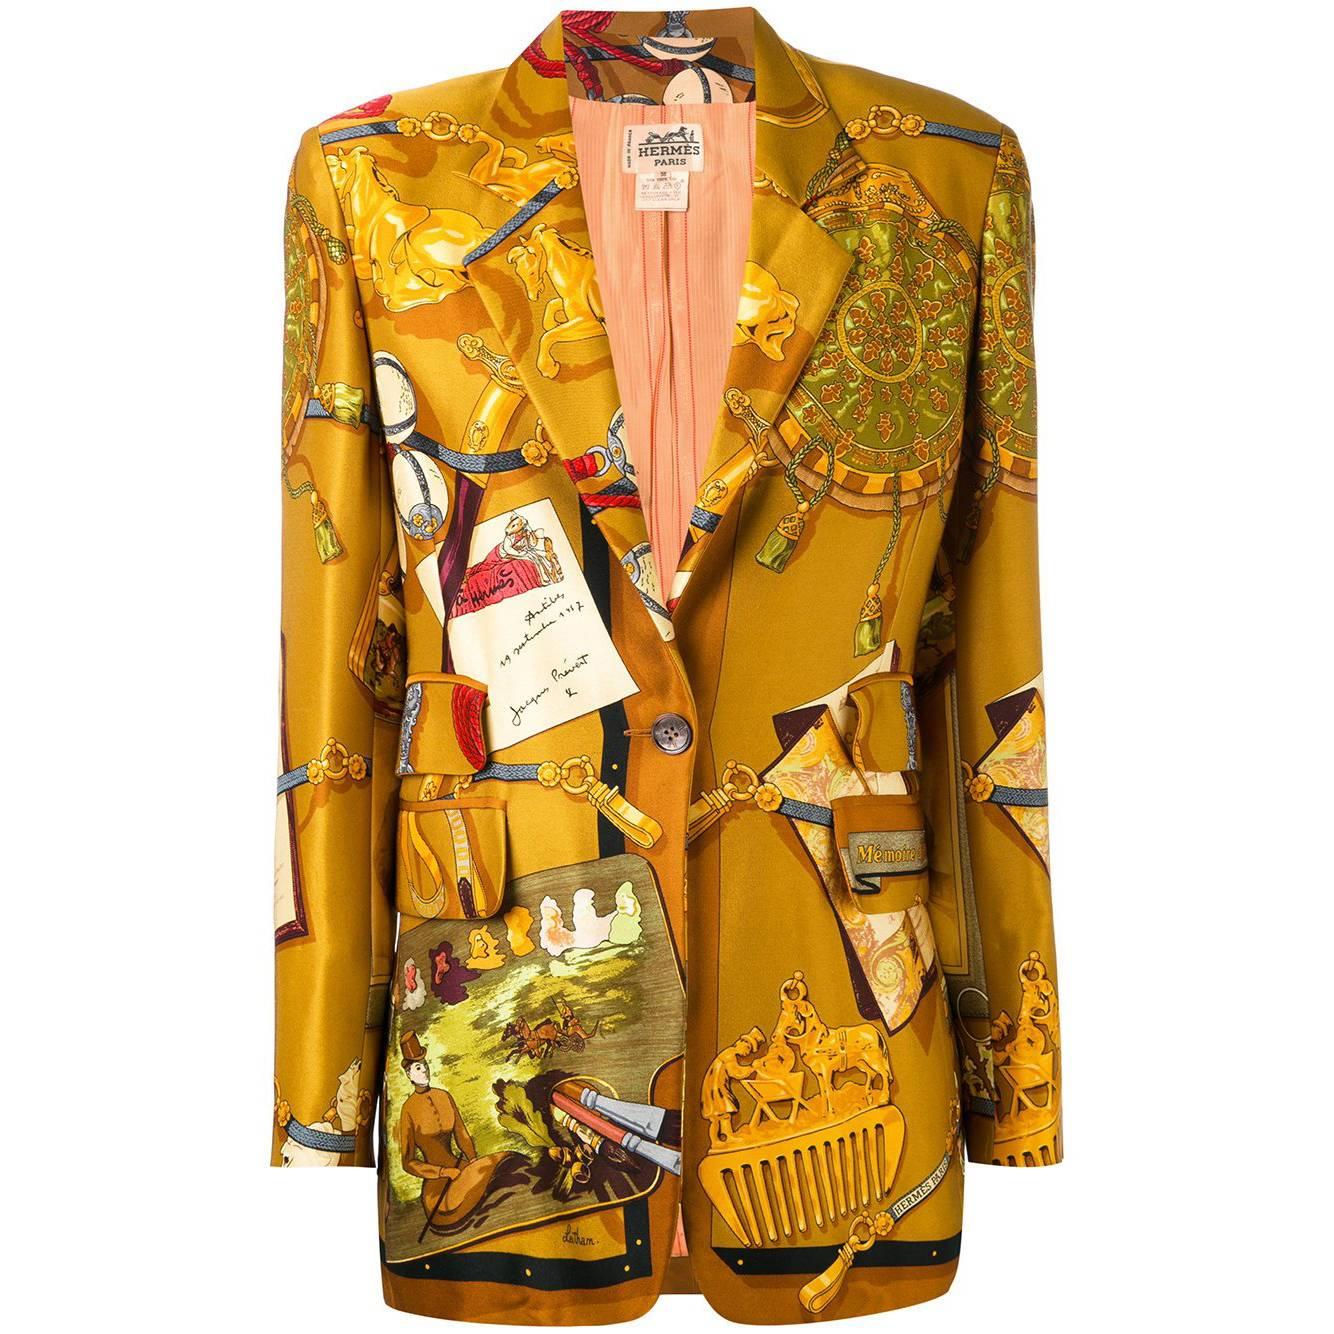 Hermès Multicolor Silk Vintage Jacket, 1990s